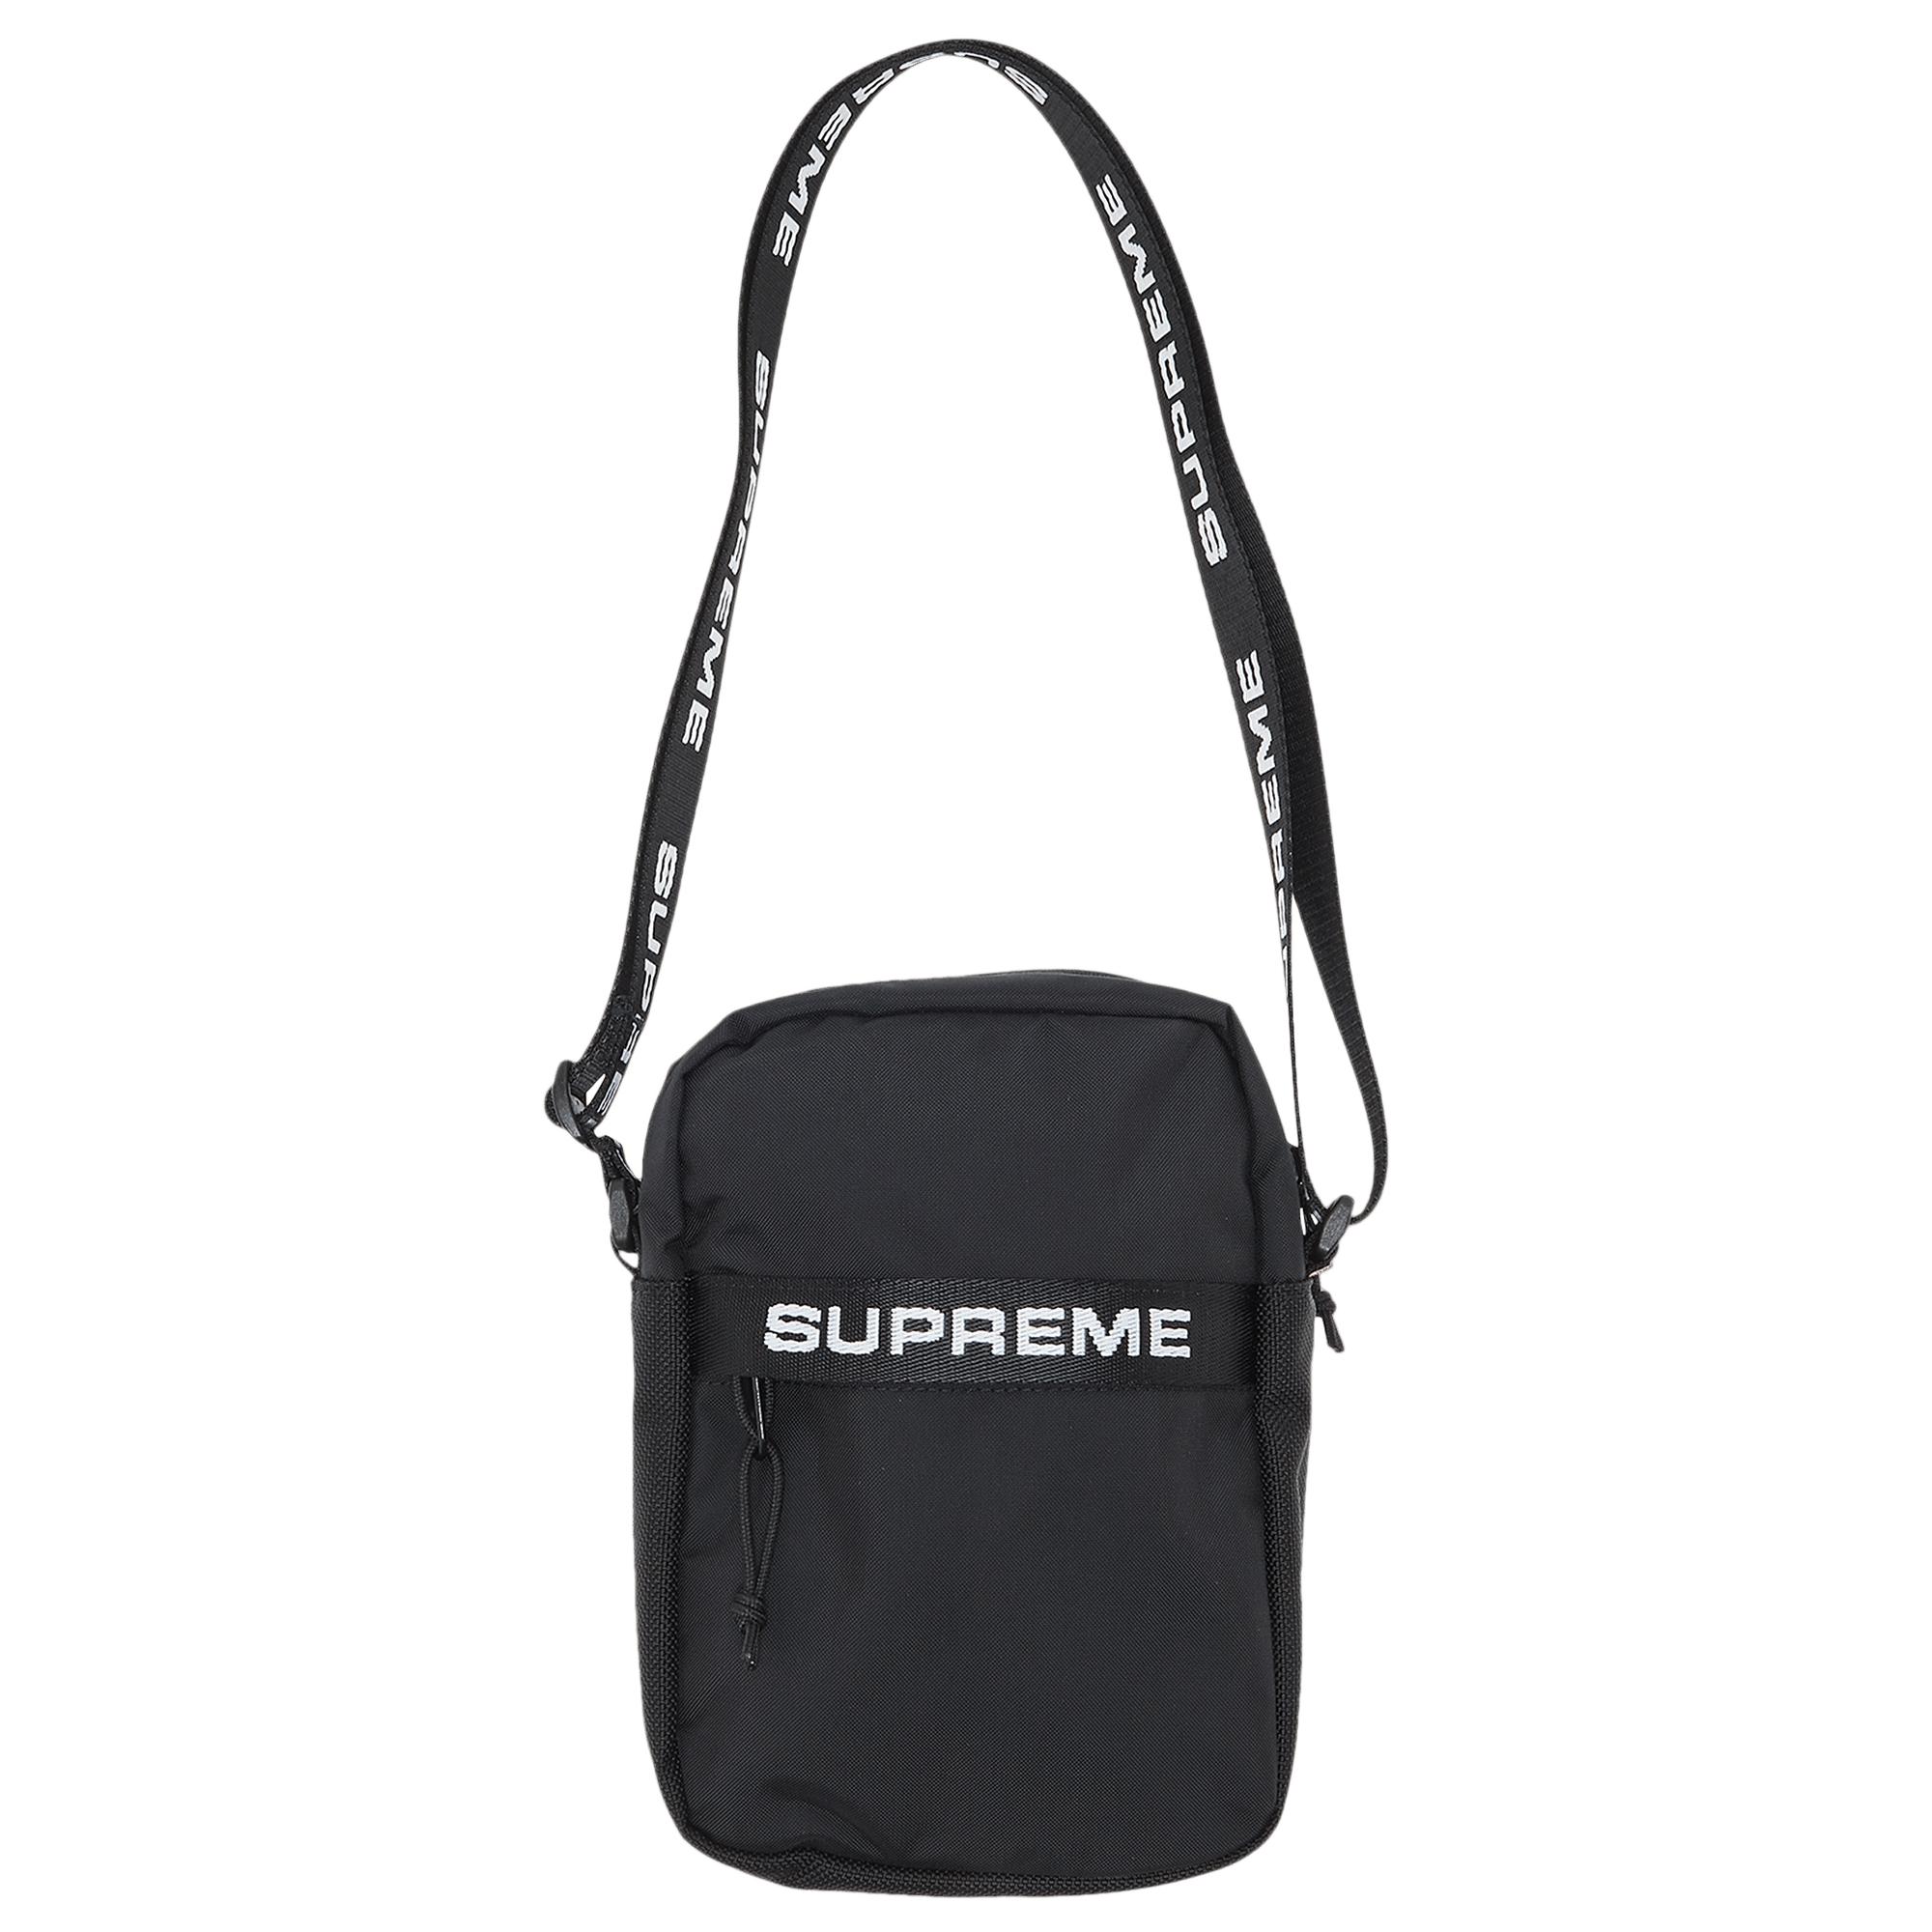 Supreme Shoulder Bag 'black' for Men | Lyst